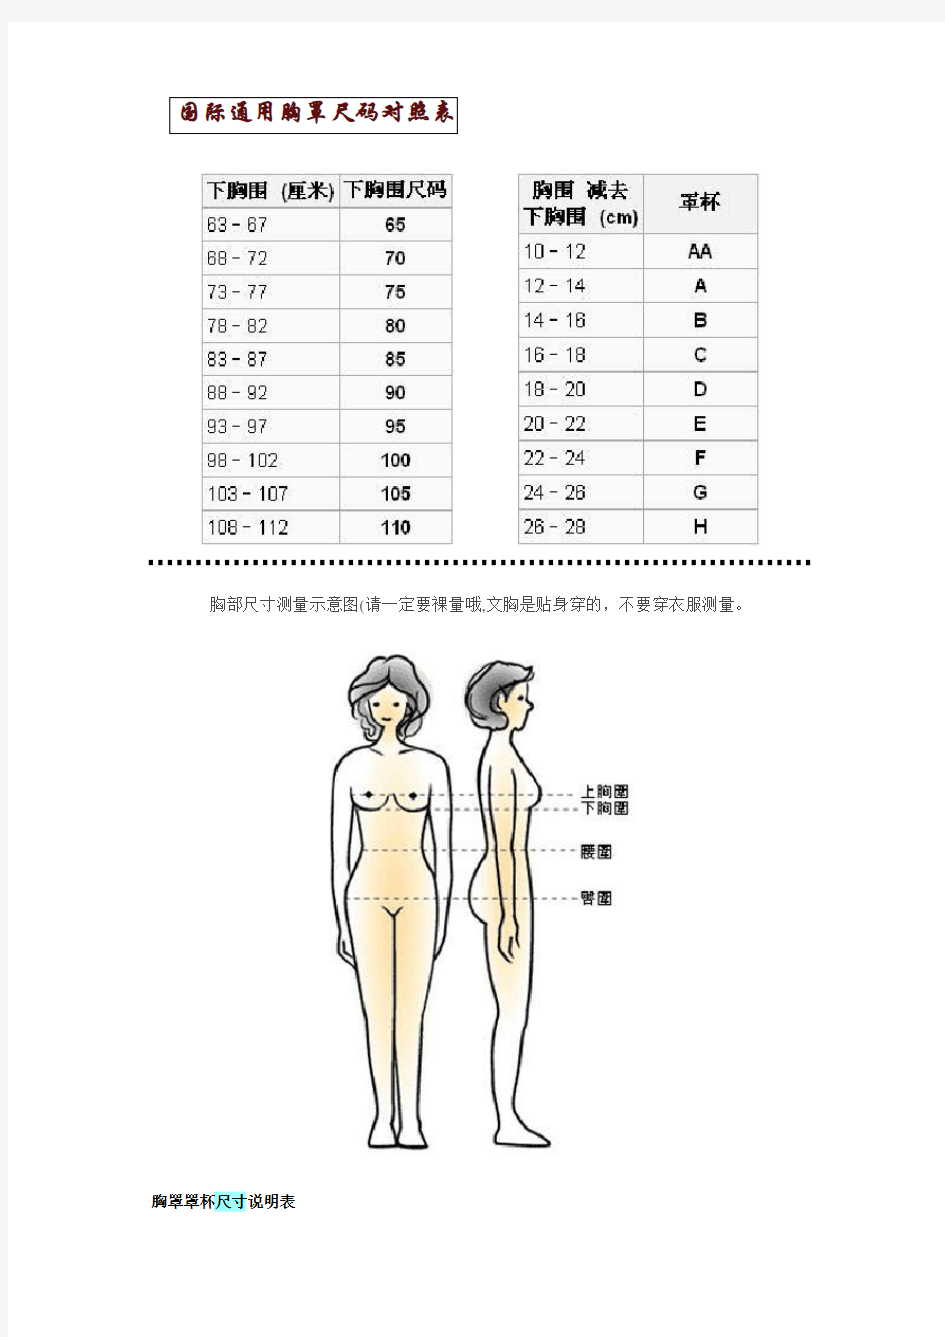 国际通用胸罩尺码对照表及其他